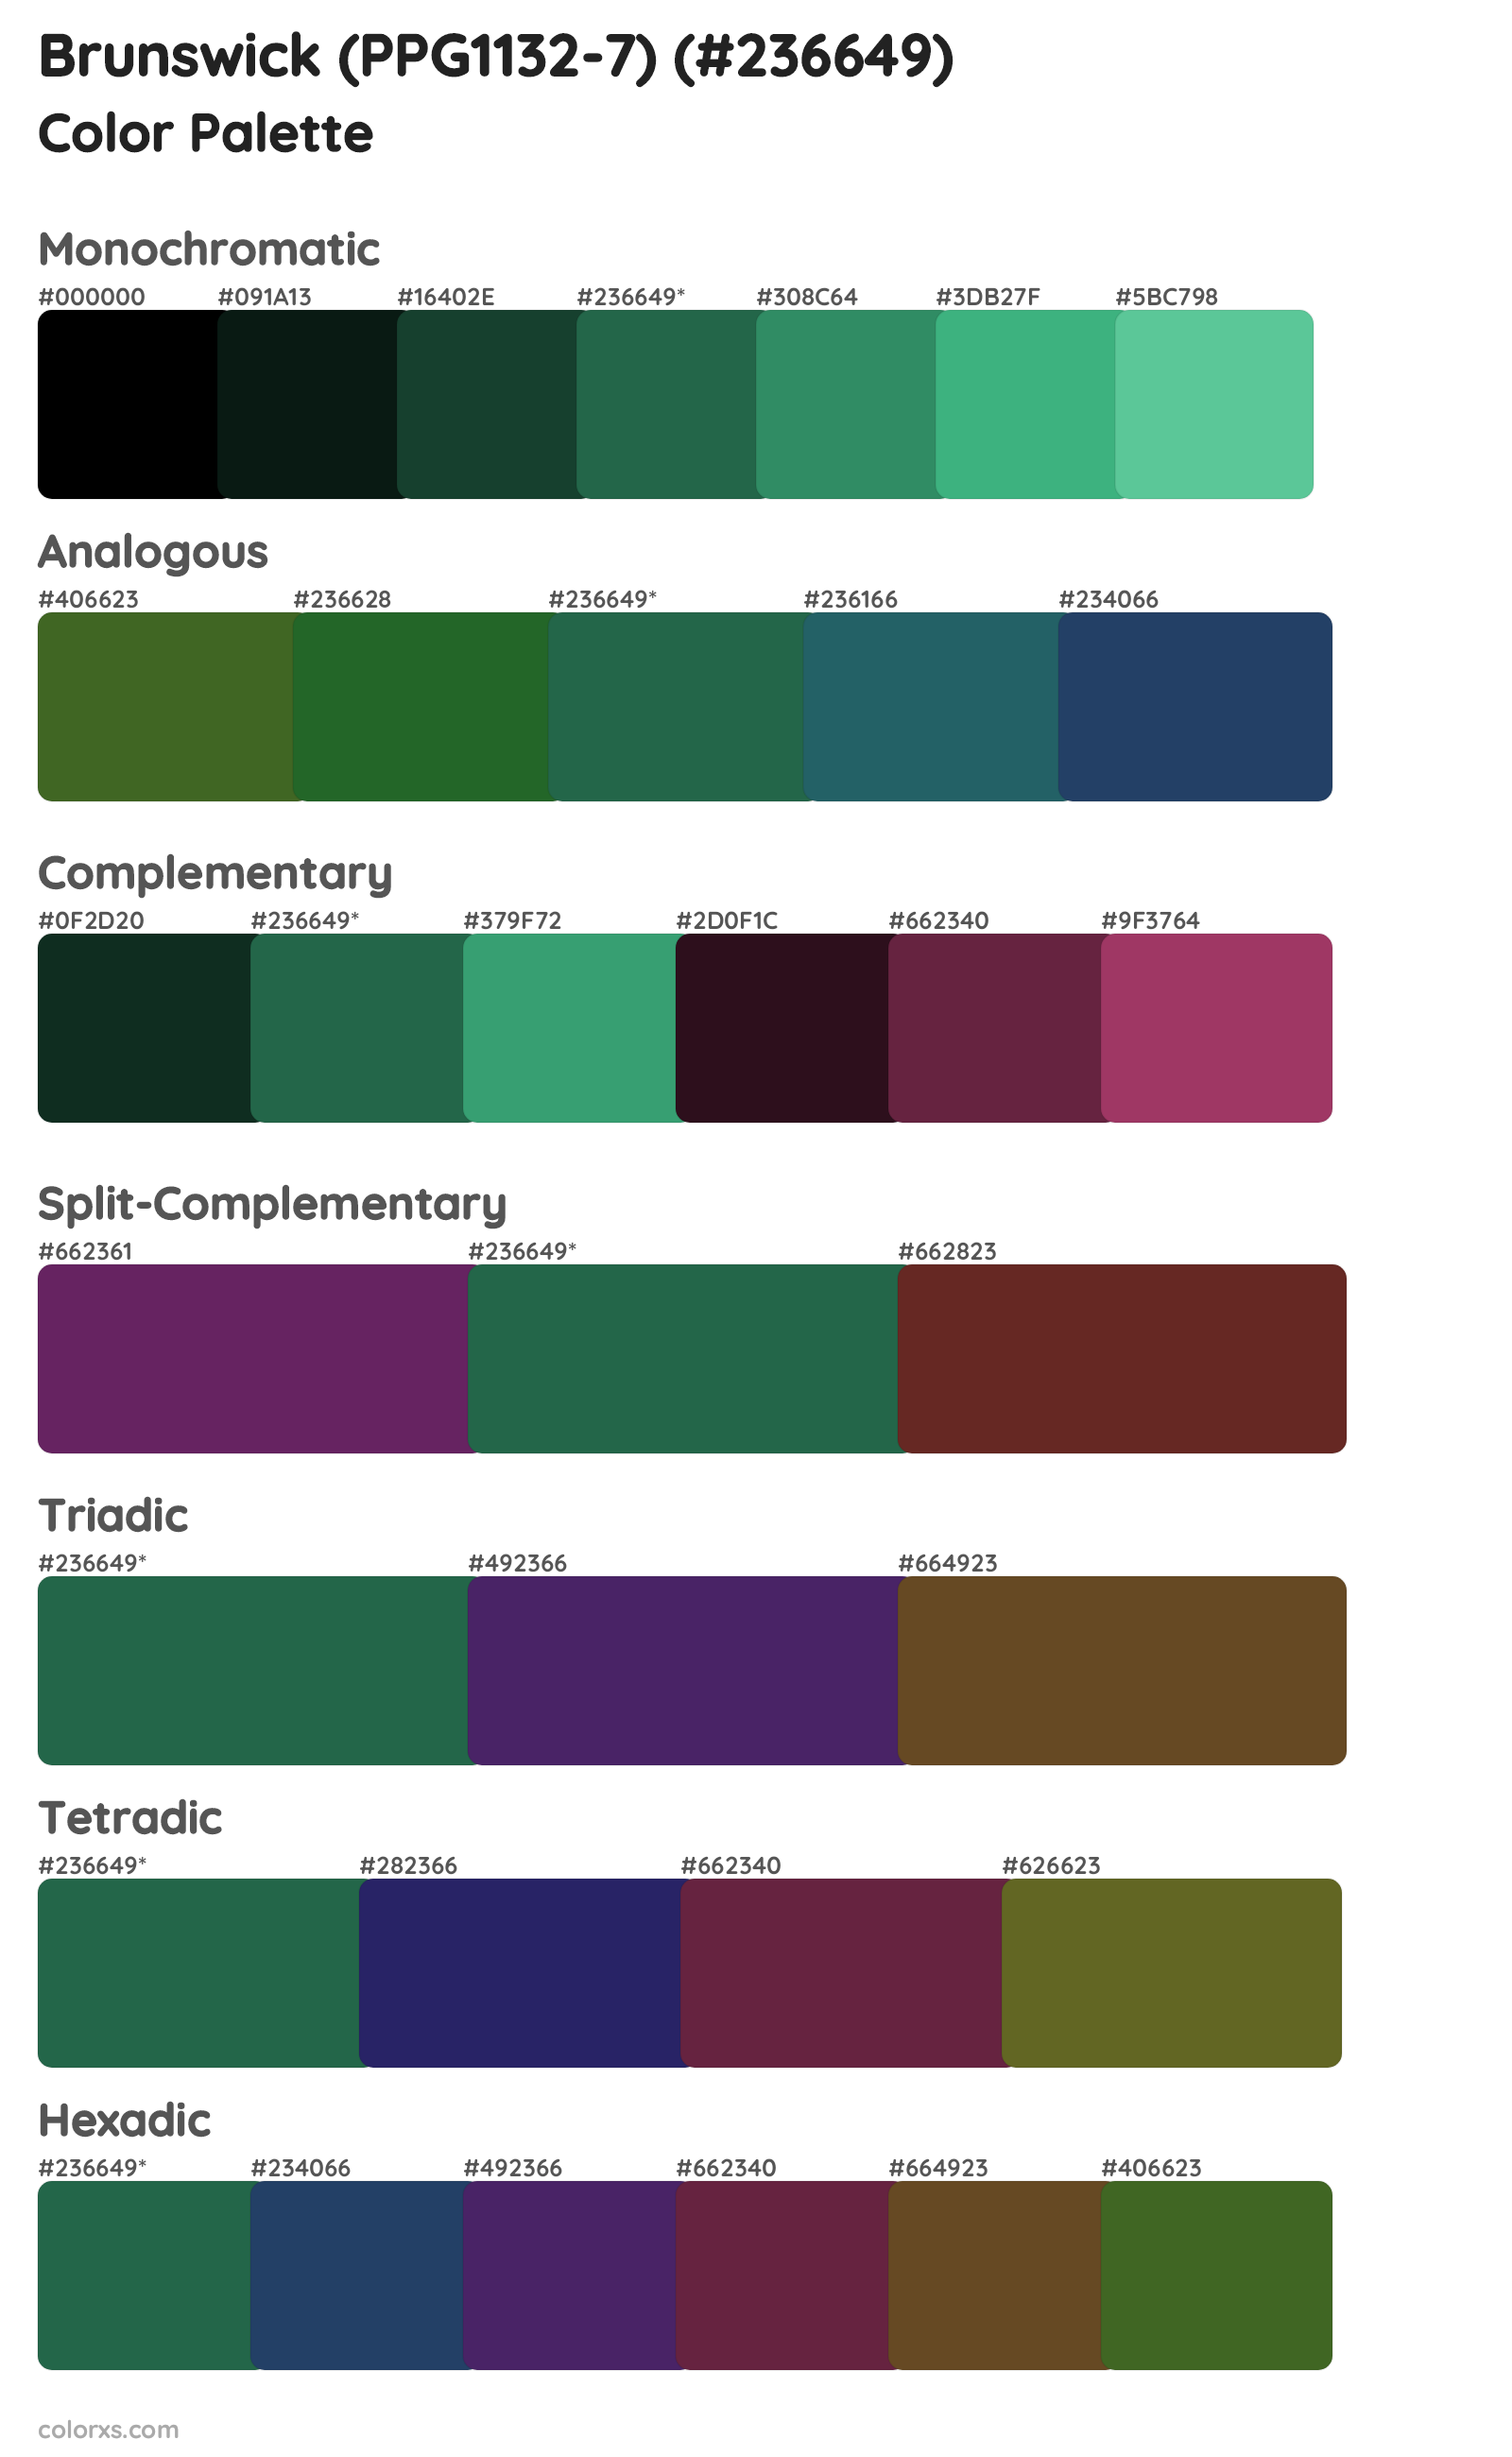 Brunswick (PPG1132-7) Color Scheme Palettes